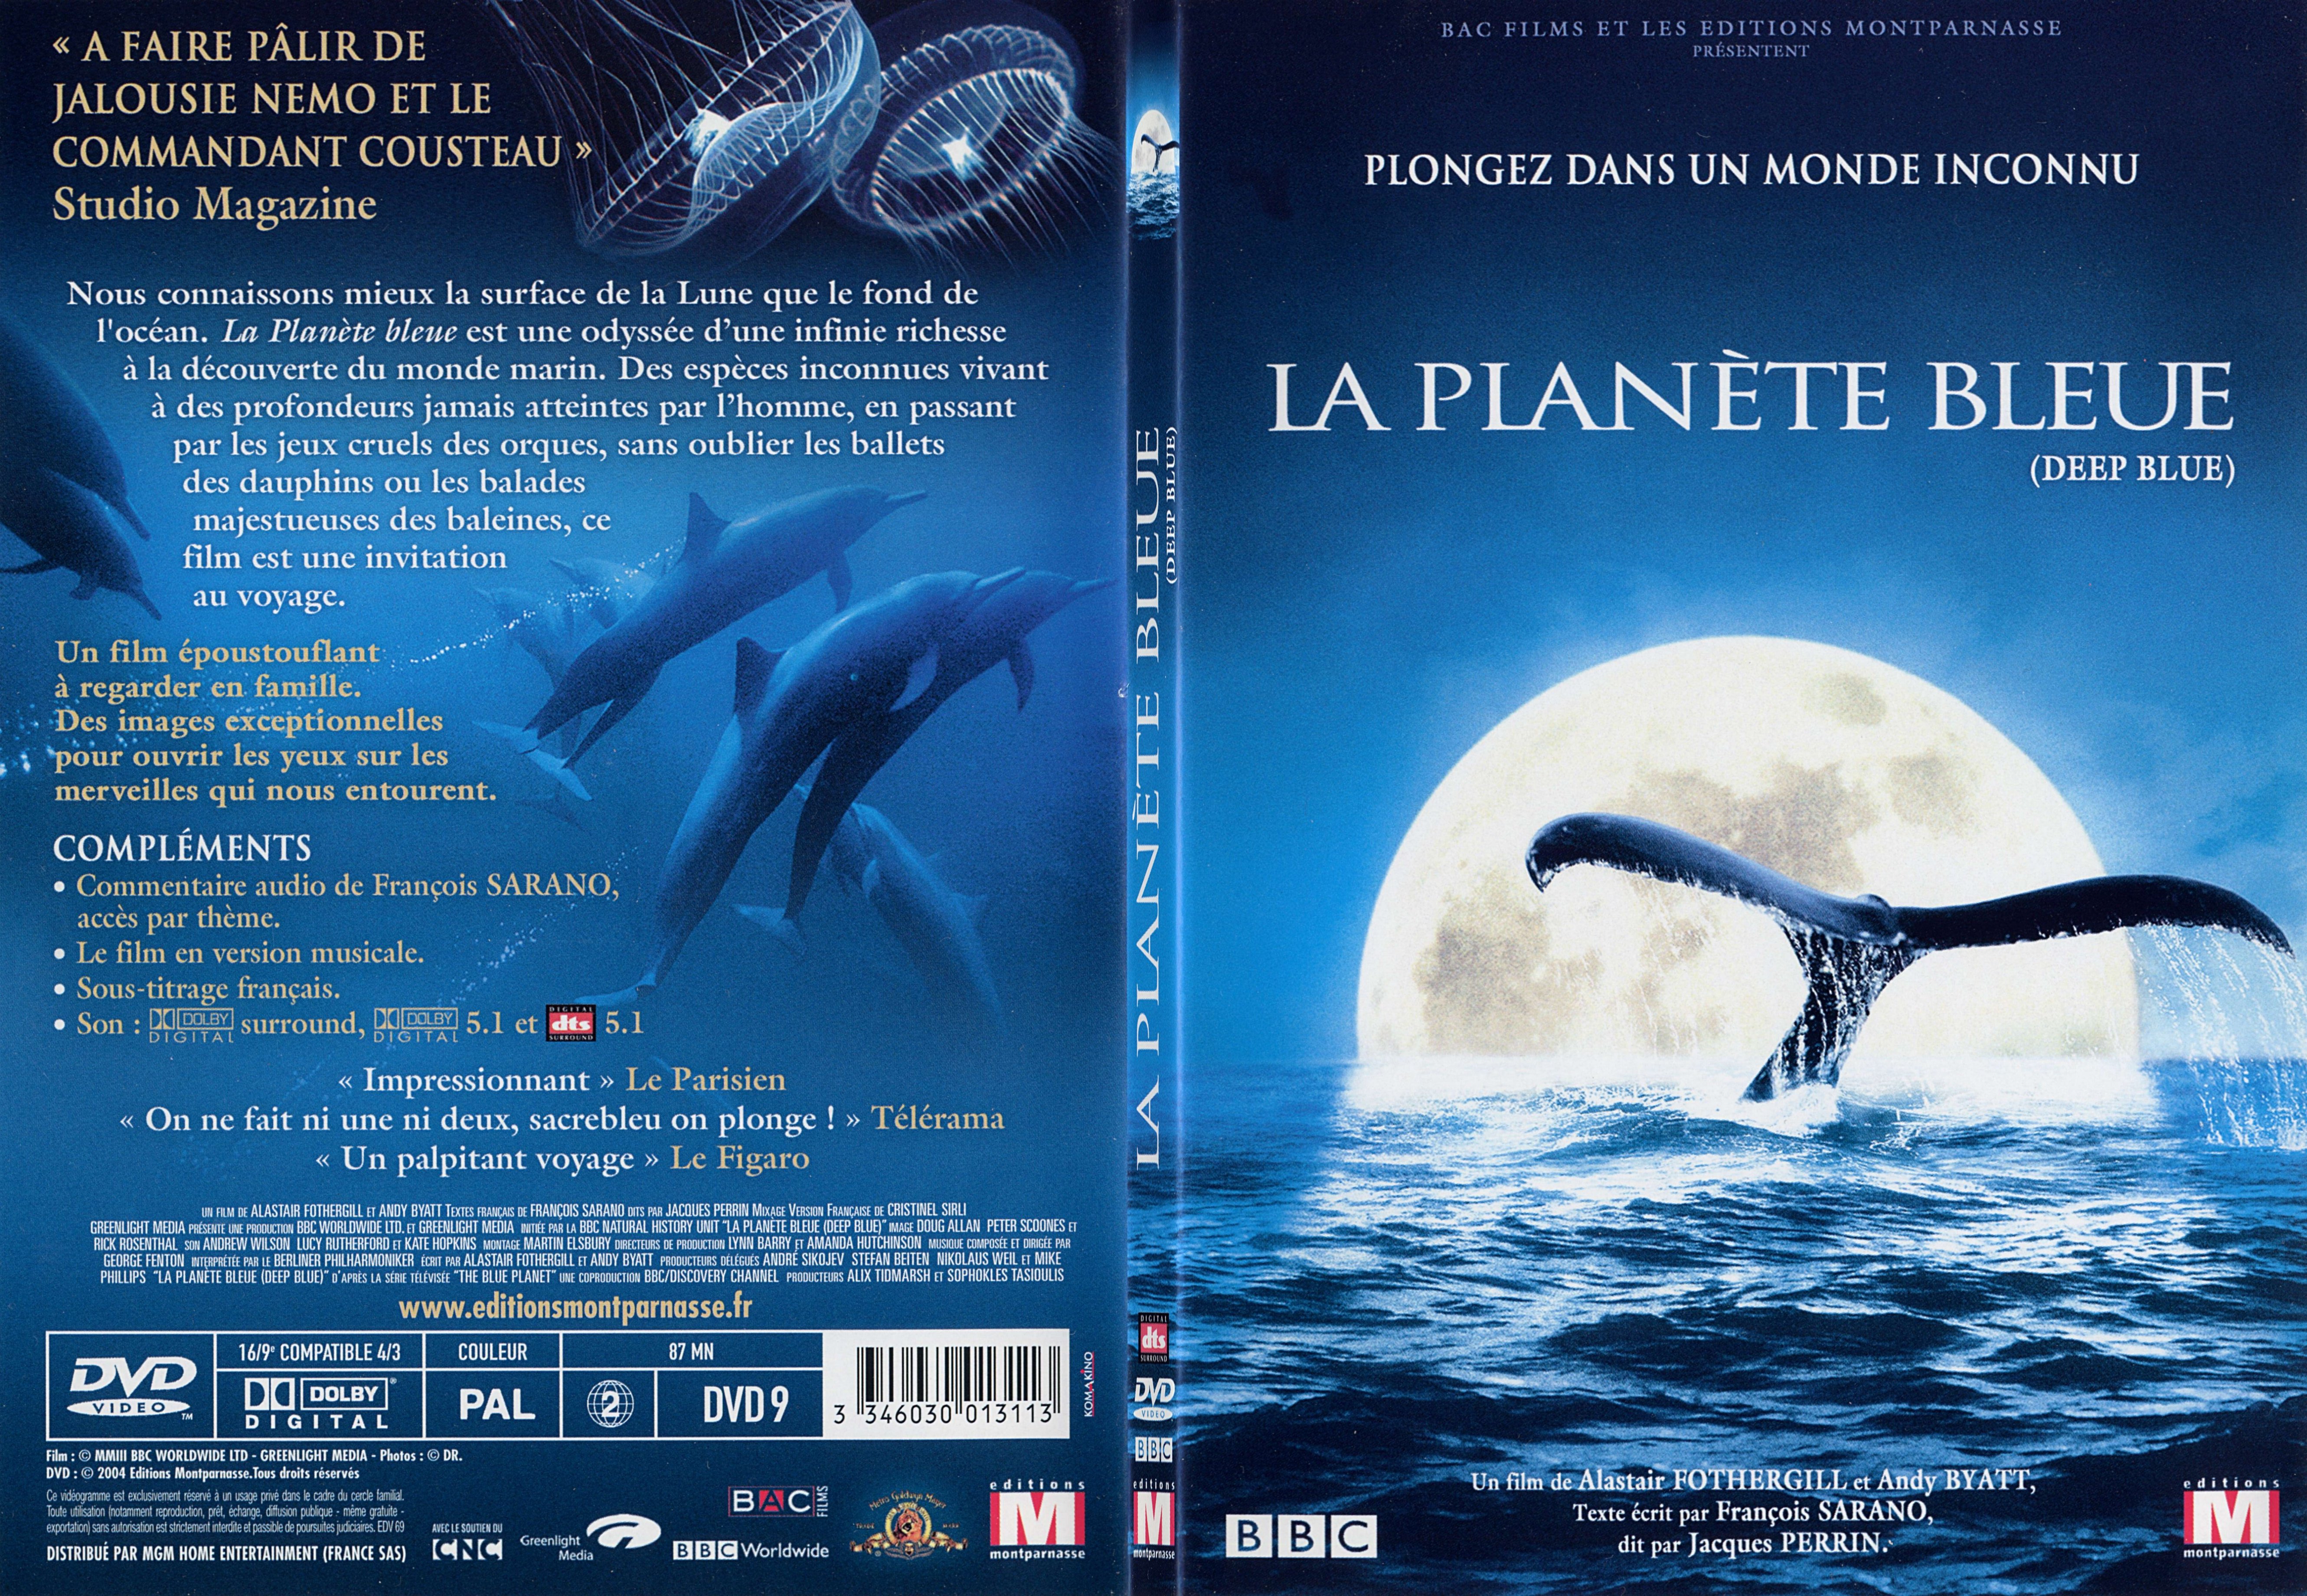 Jaquette DVD La planete bleue - SLIM